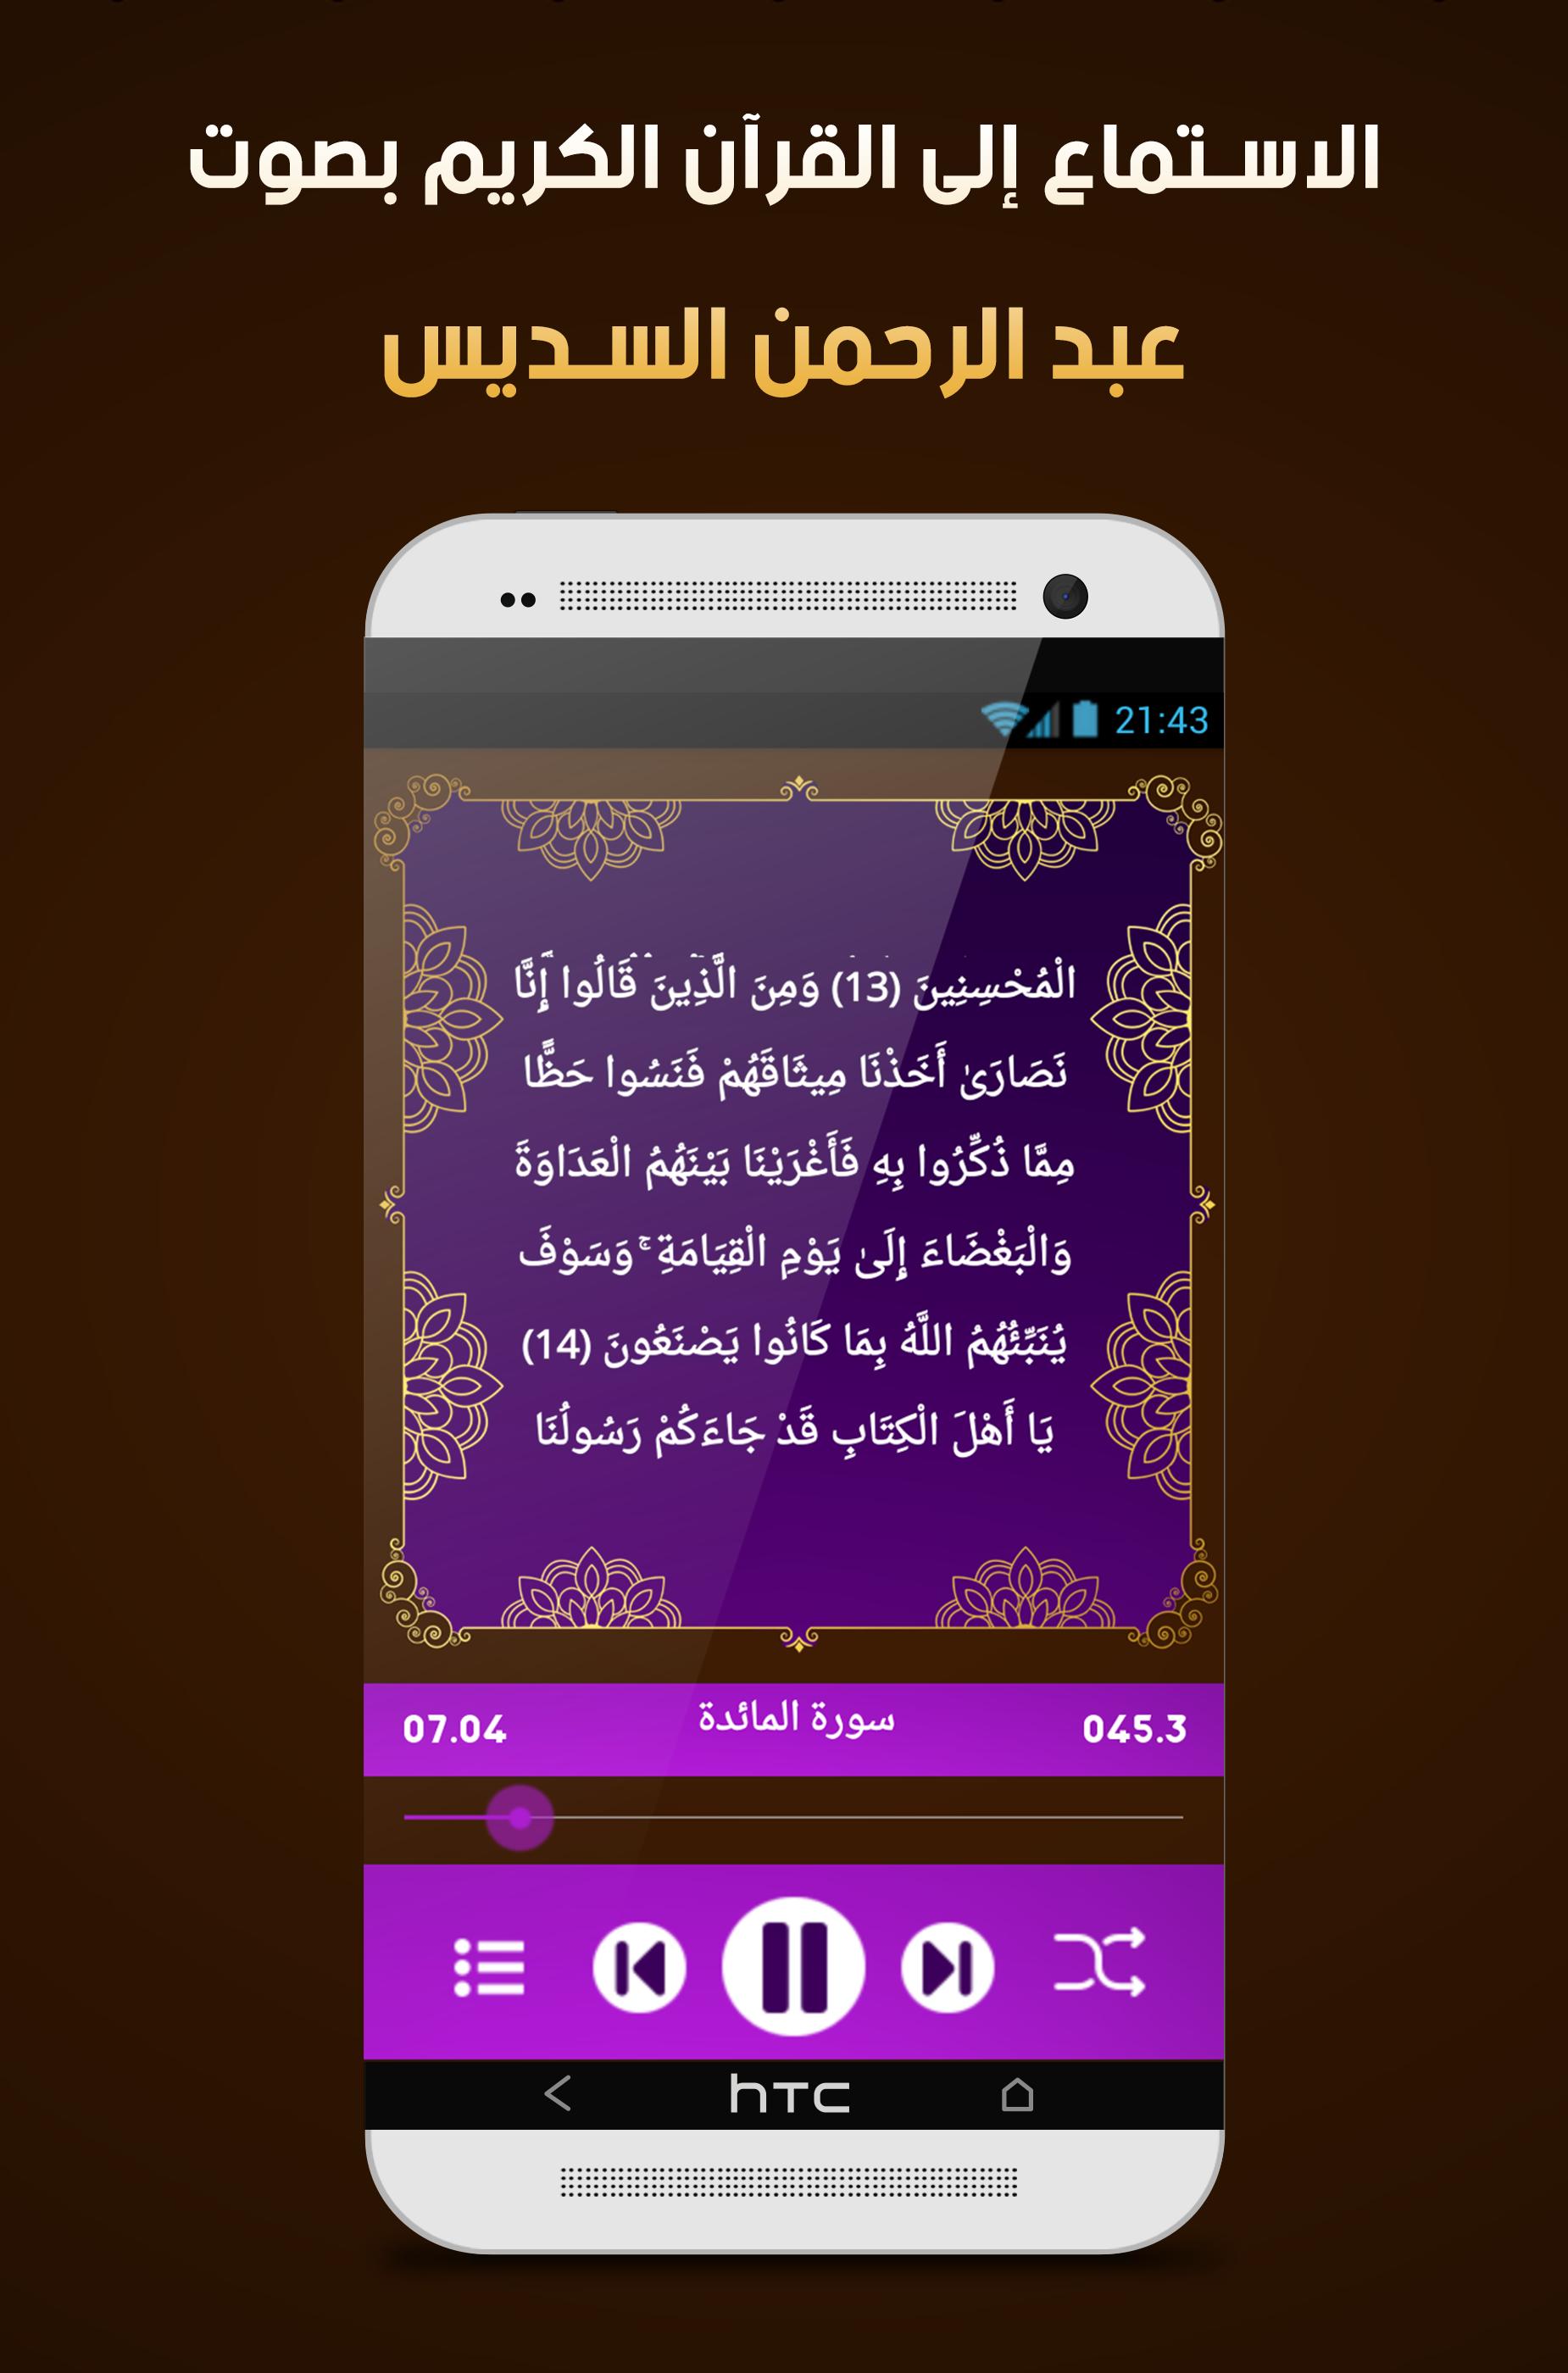 السديس قرآن كامل صوت و نص بدون انترنت For Android Apk Download